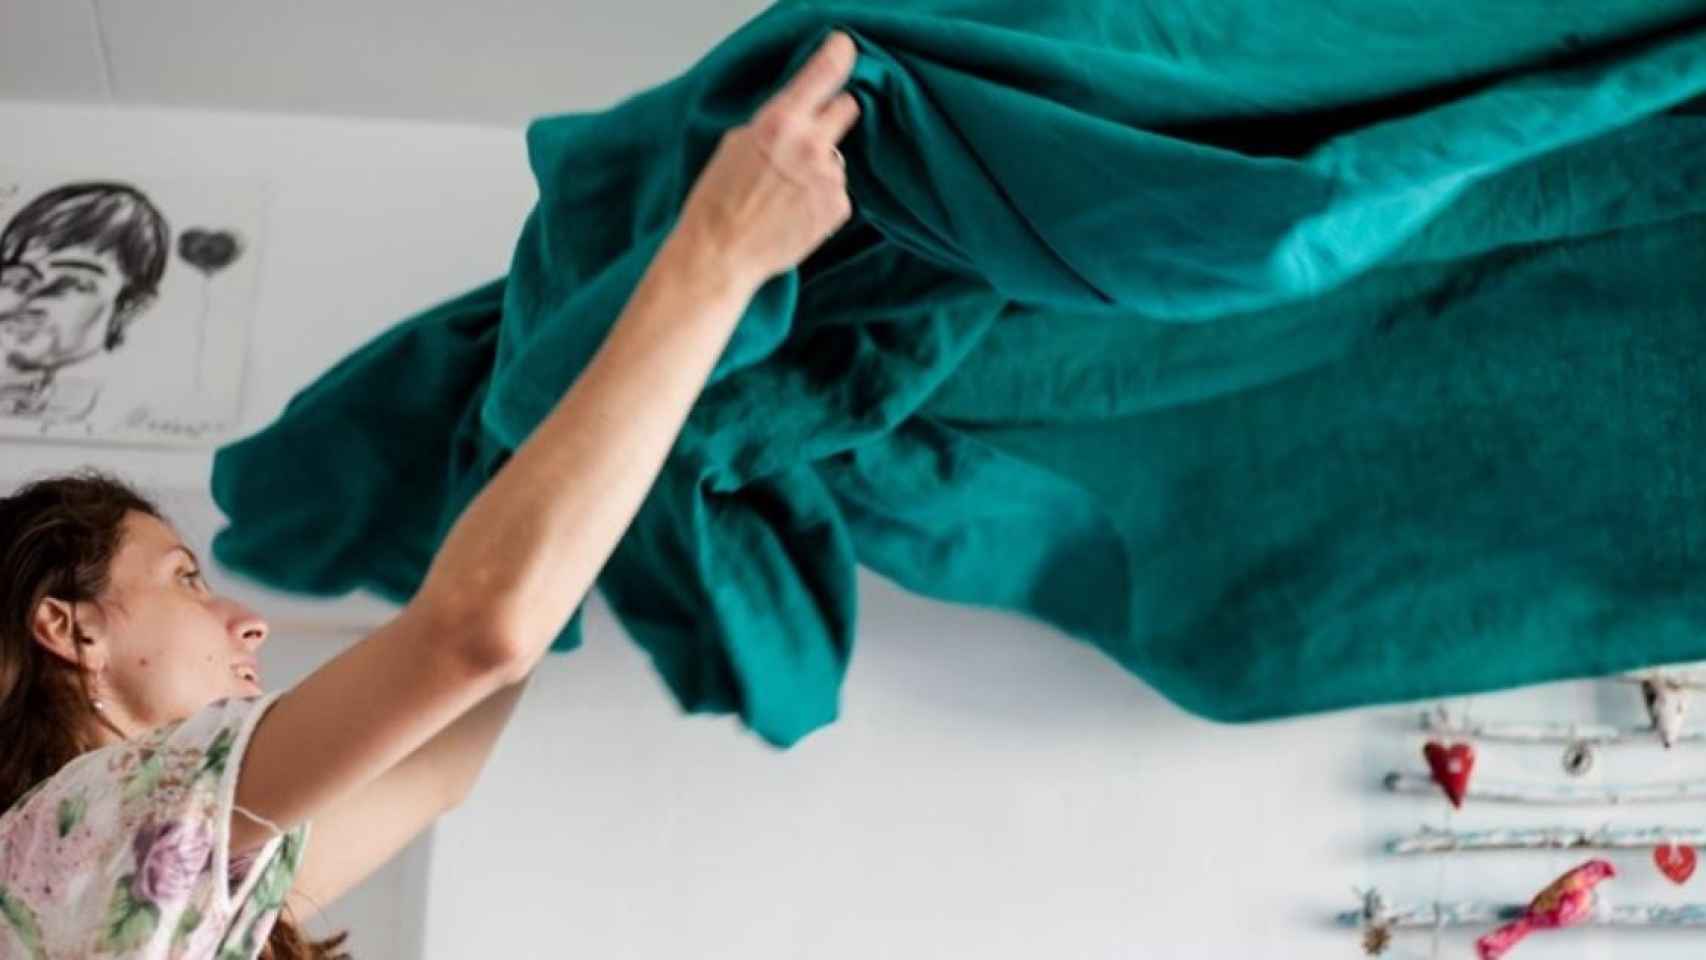 Hacer las camas, una de las tareas para practicar el cleanfulness / Volha Flexeco en UNSPLASH